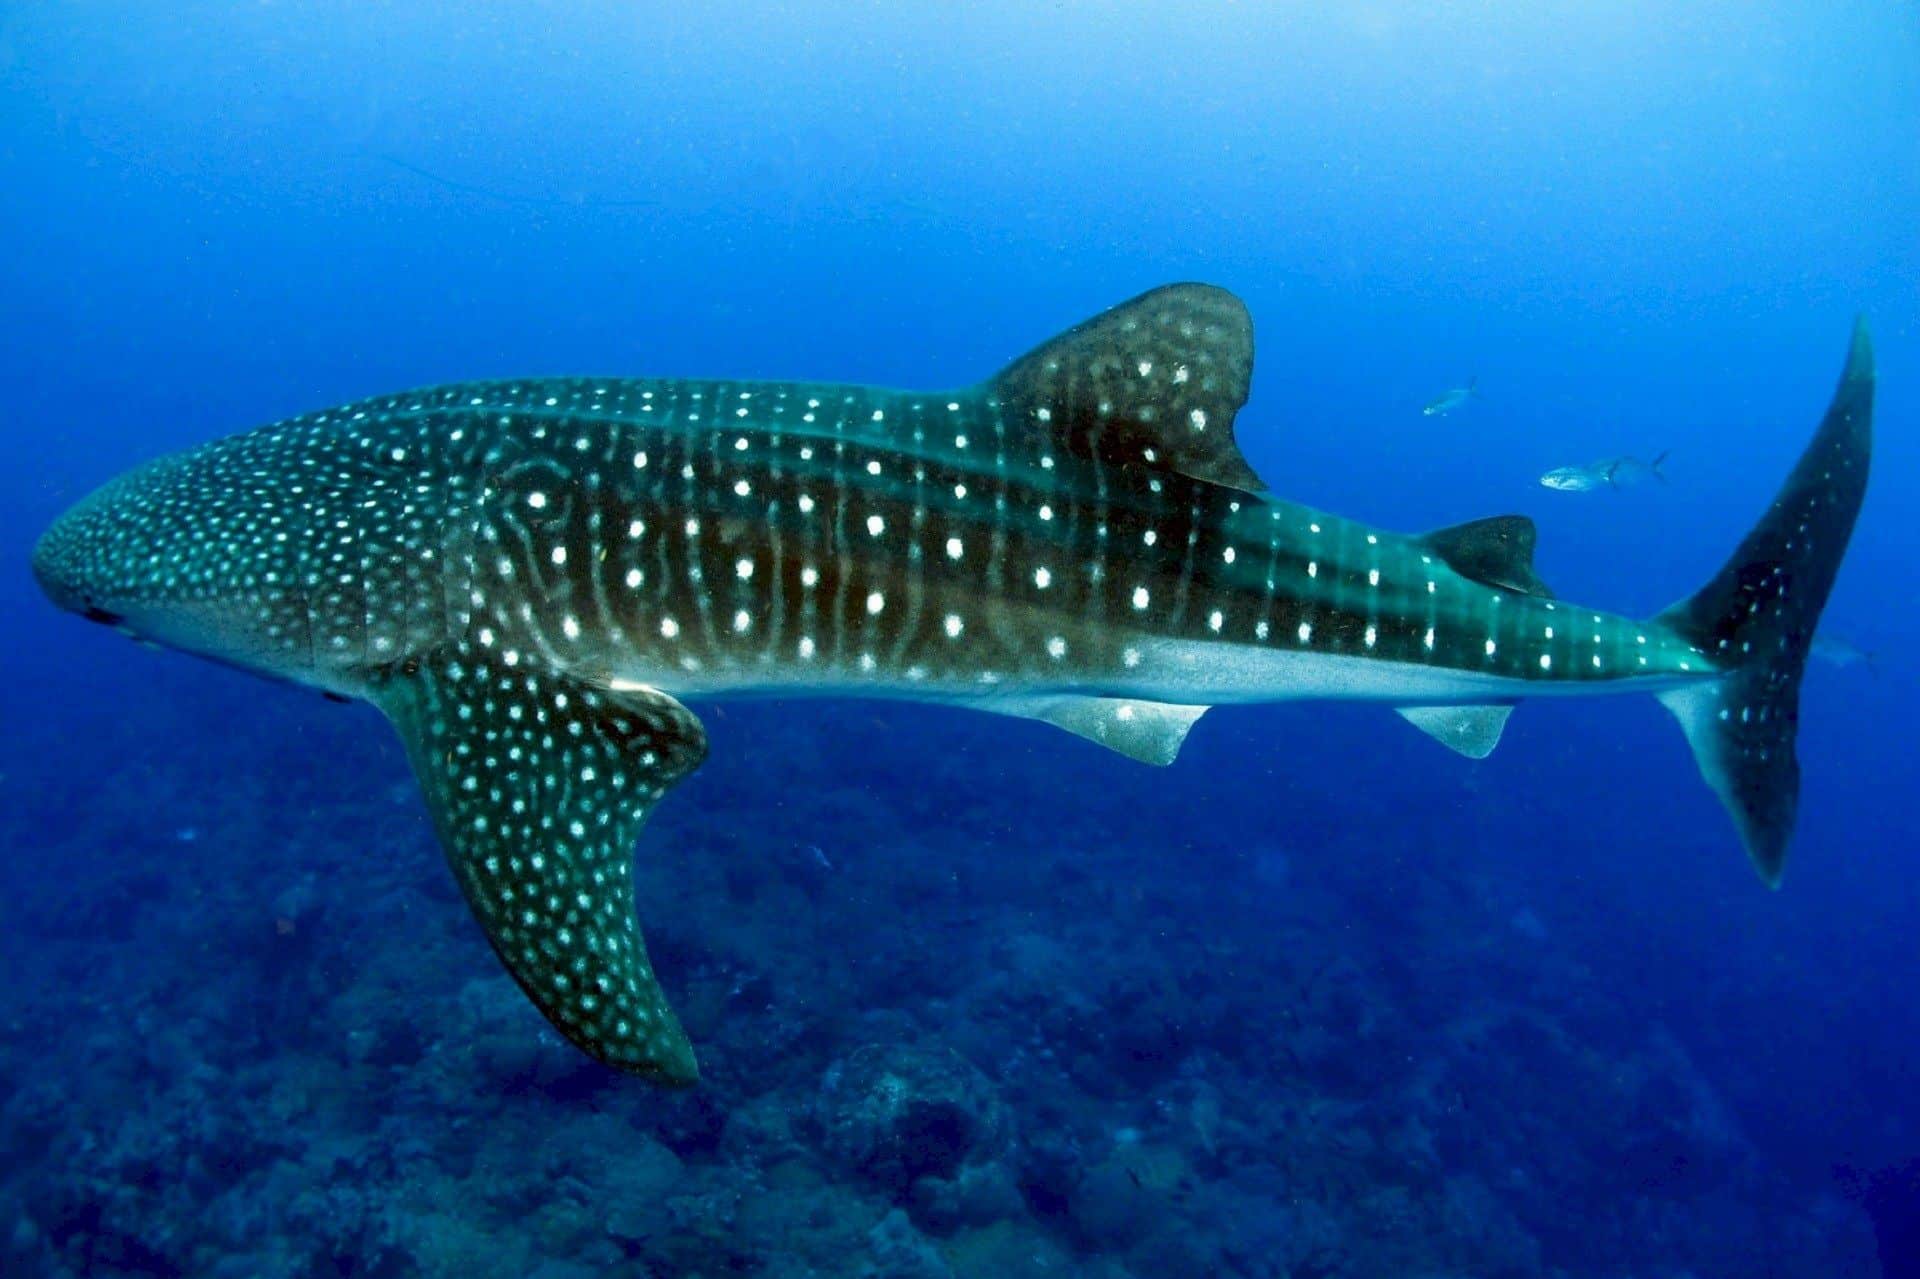 Der größte Fisch der Welt ist der Walhai. Er kann eine Länge von bis zu 20 Metern und ein Gewicht von mehr als 15 Tonnen erreichen. Auf den Malediven kann man dieses anmutige, kolossale Lebewesen besonders häufig sehen. Foto: Pixabay